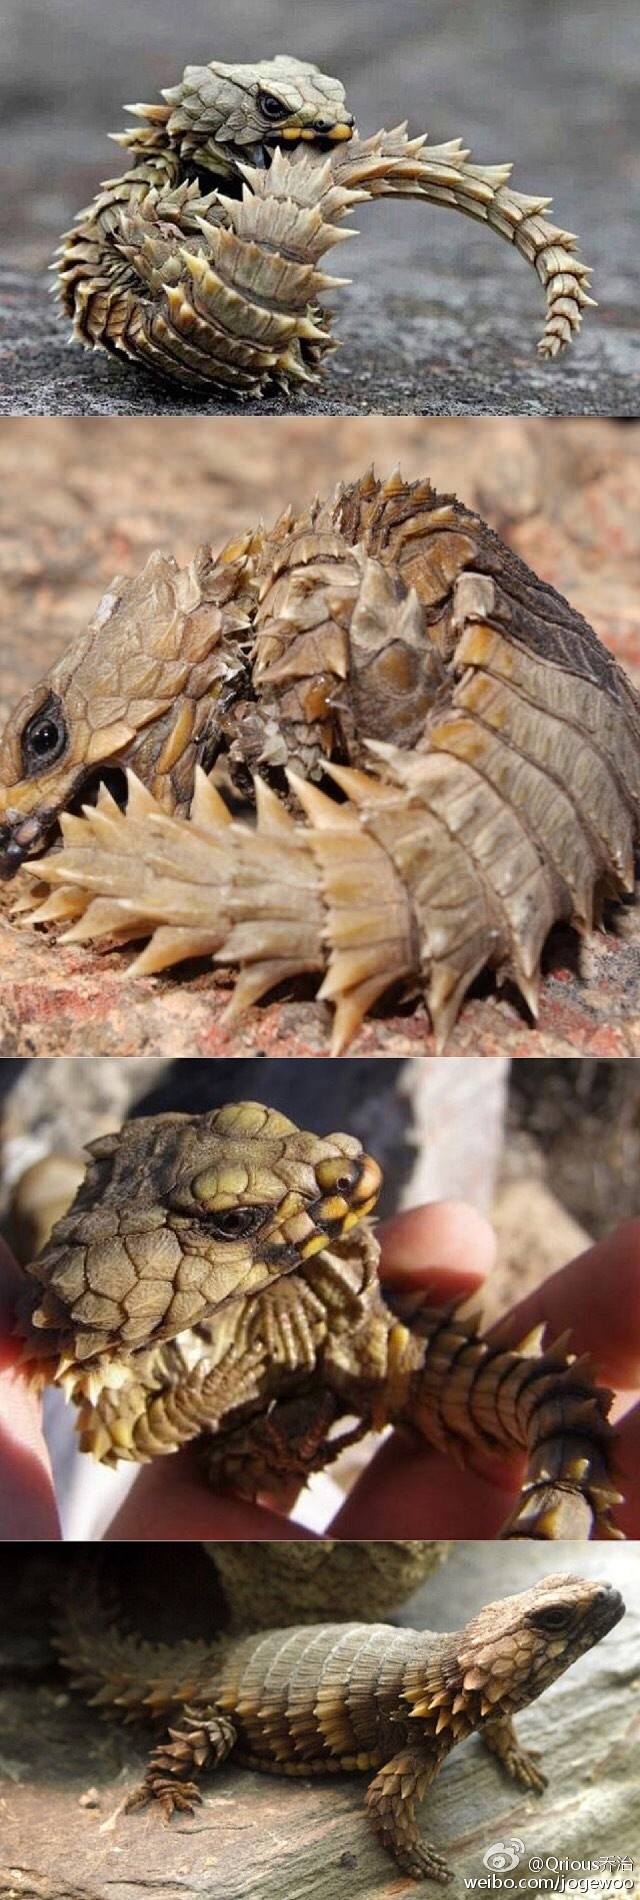 armadillogirdledlizard南非犰狳蜥animaldragon现实中的迷你龙咬着